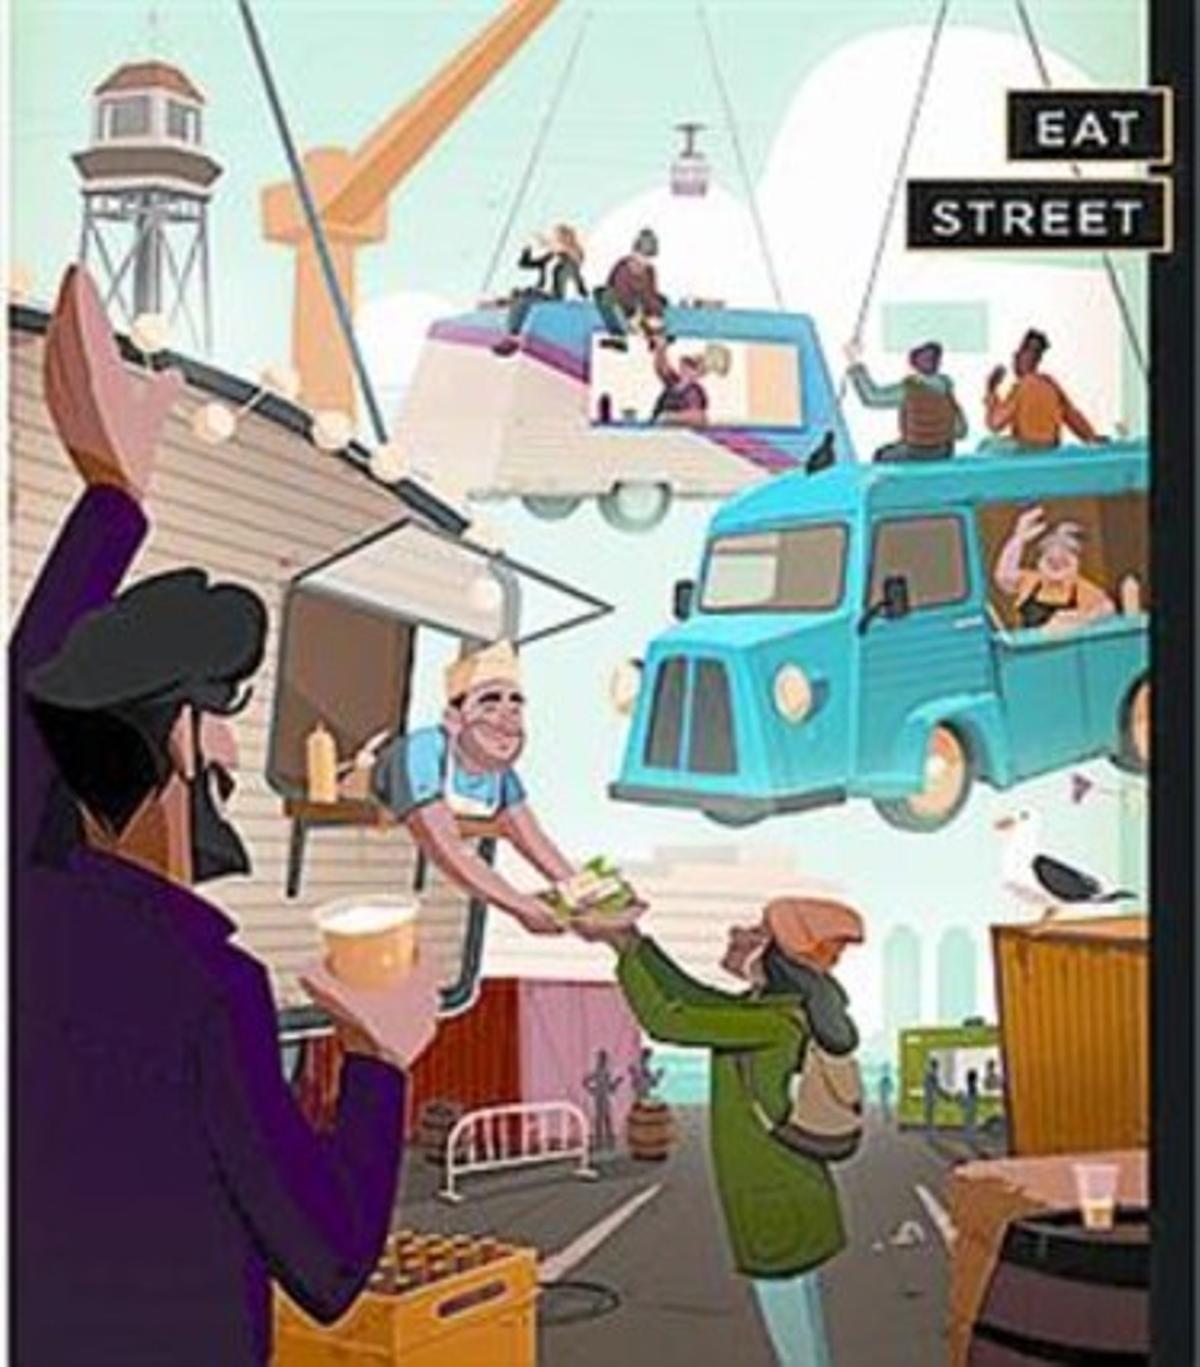 Tastos a la fira Arrels de Vi d’Empúries. A sota, cartell de l’Eat Street.